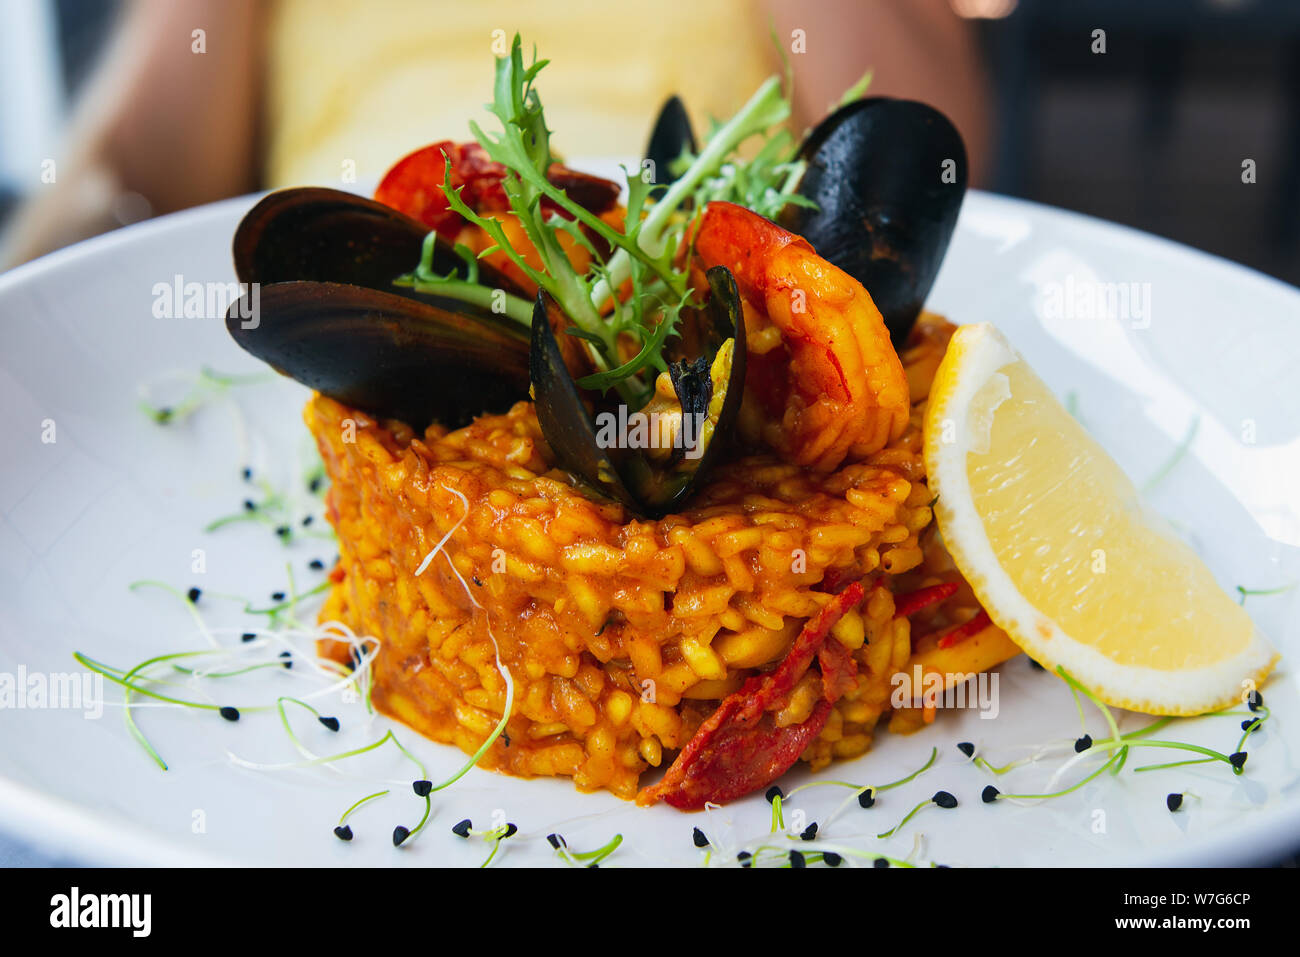 Spanische Paella mit Muscheln und Garnelen mit Zitrone und Rucola. Auf einem weißen Teller mit Zitrone serviert. Closeup fo einen schönen Reisgericht. Stockfoto